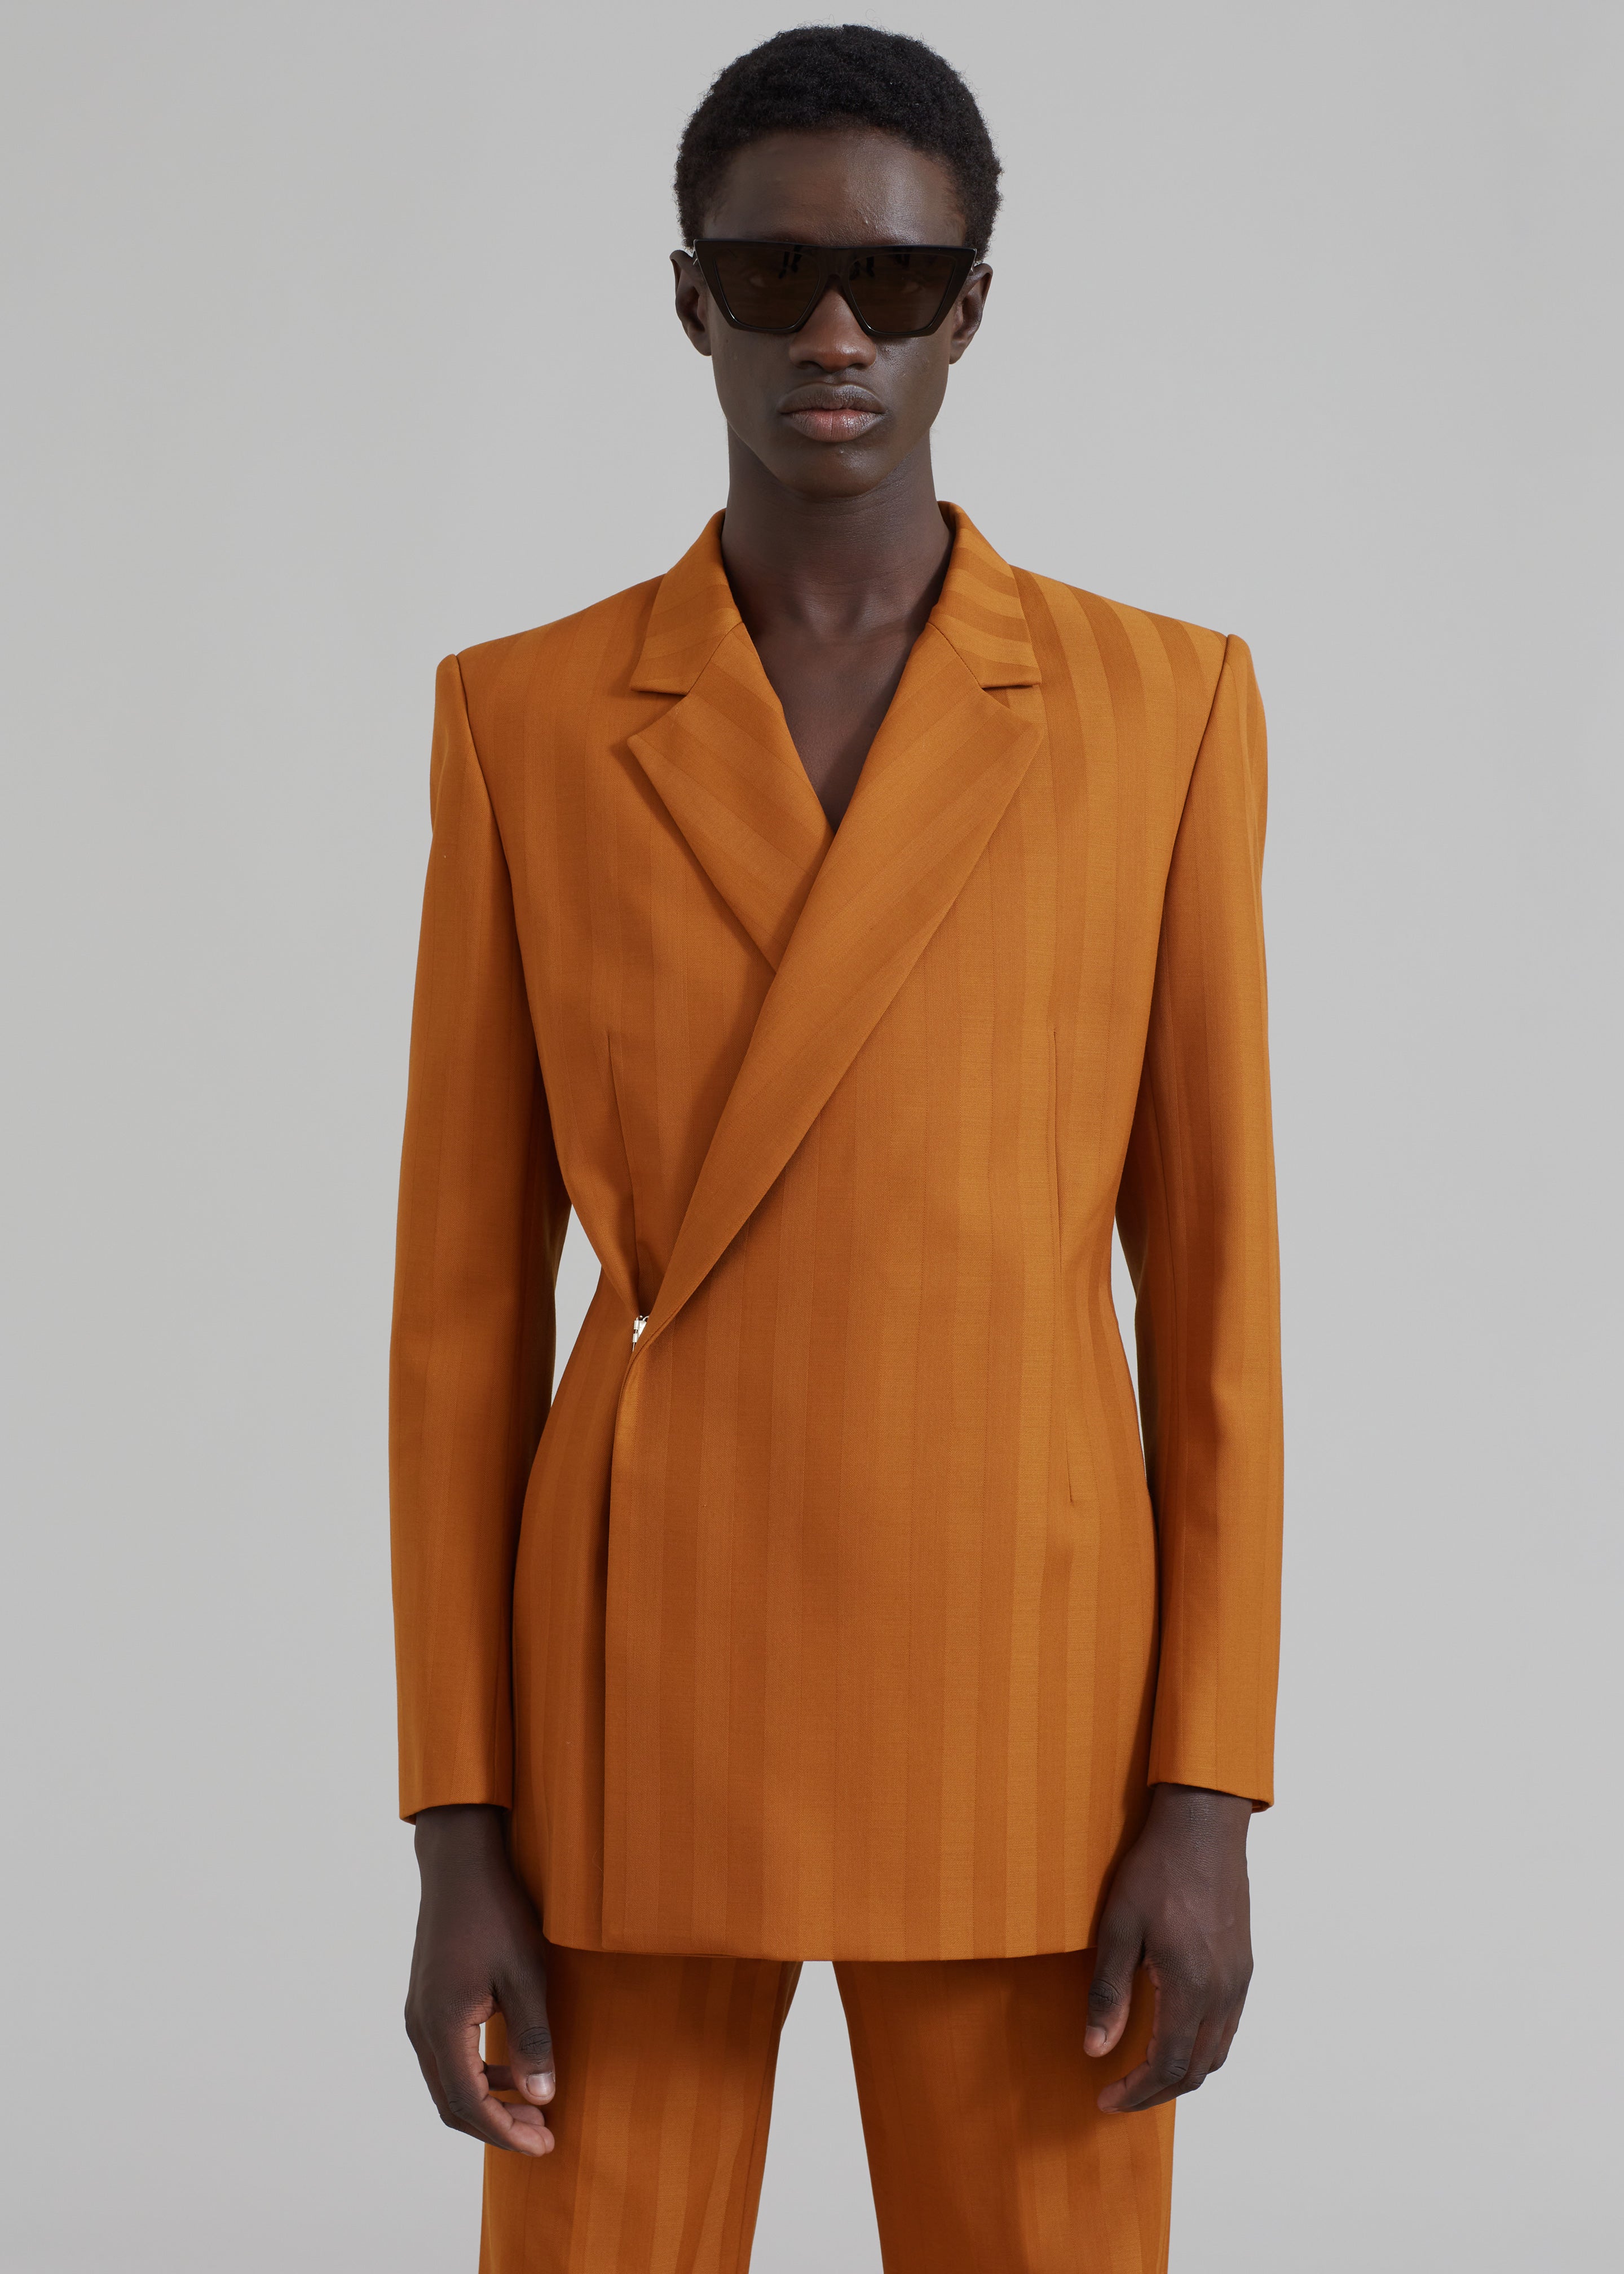 EGONLab Egonic Doubled Breasted Jacket - Orange Stripes Wool